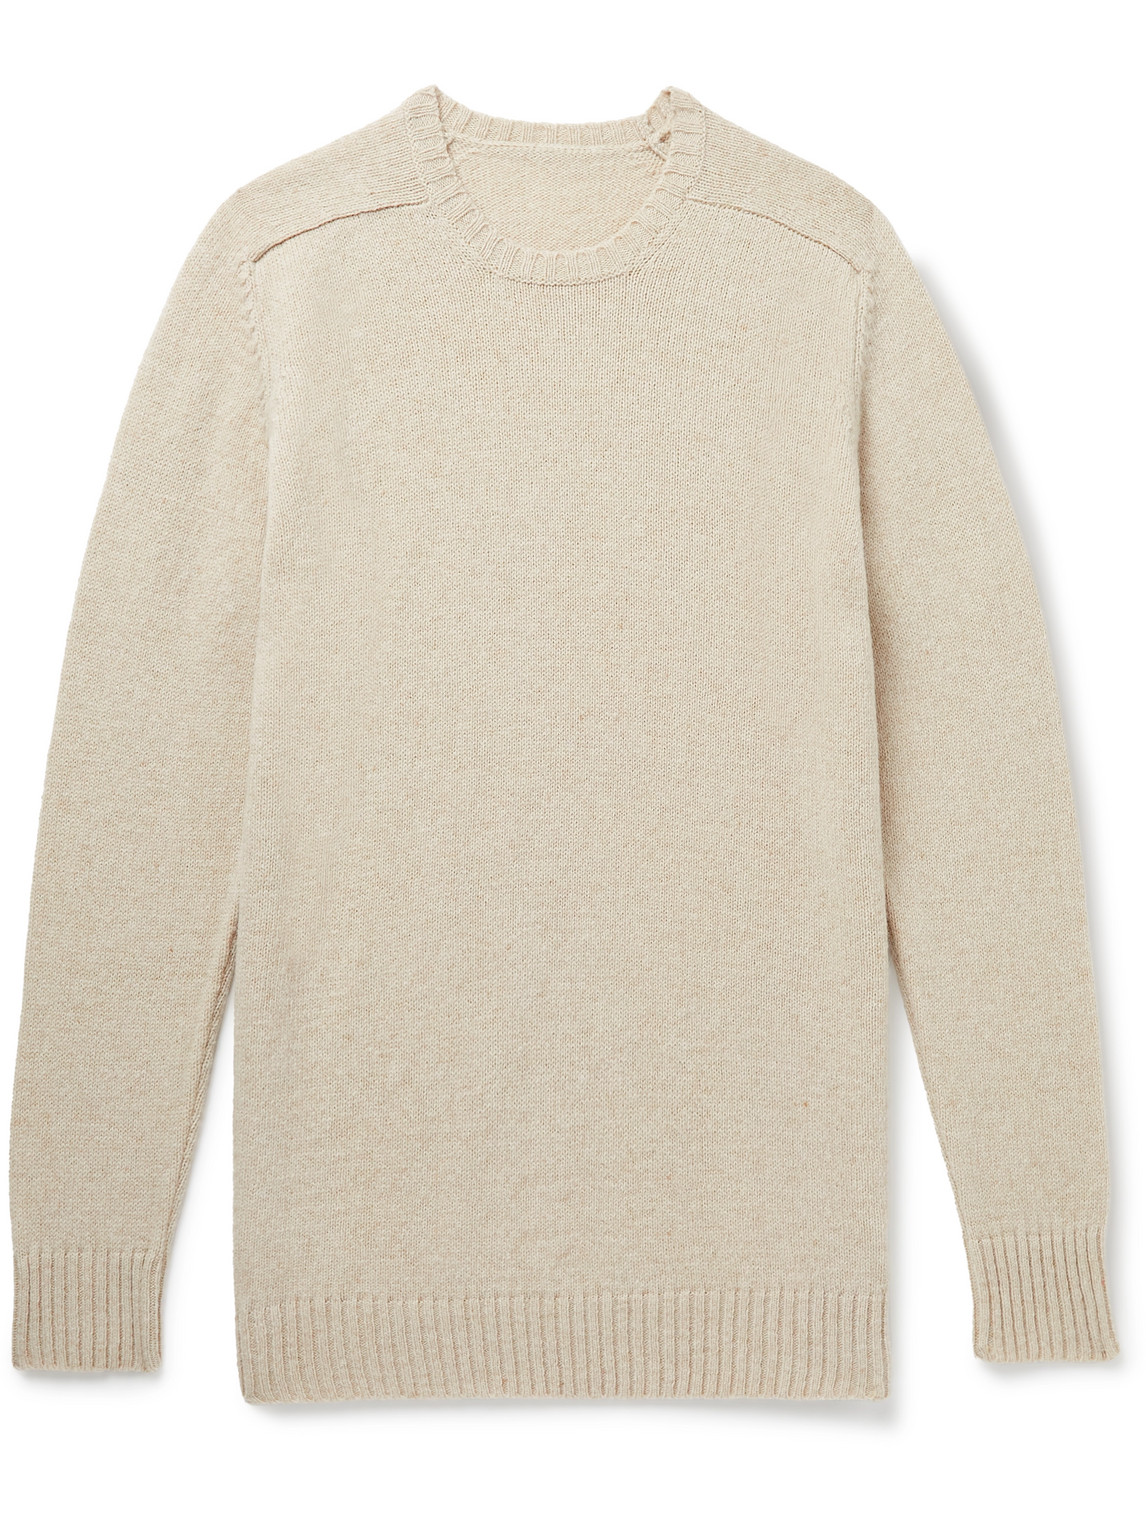 Anderson & Sheppard Shetland Wool Sweater In Neutrals